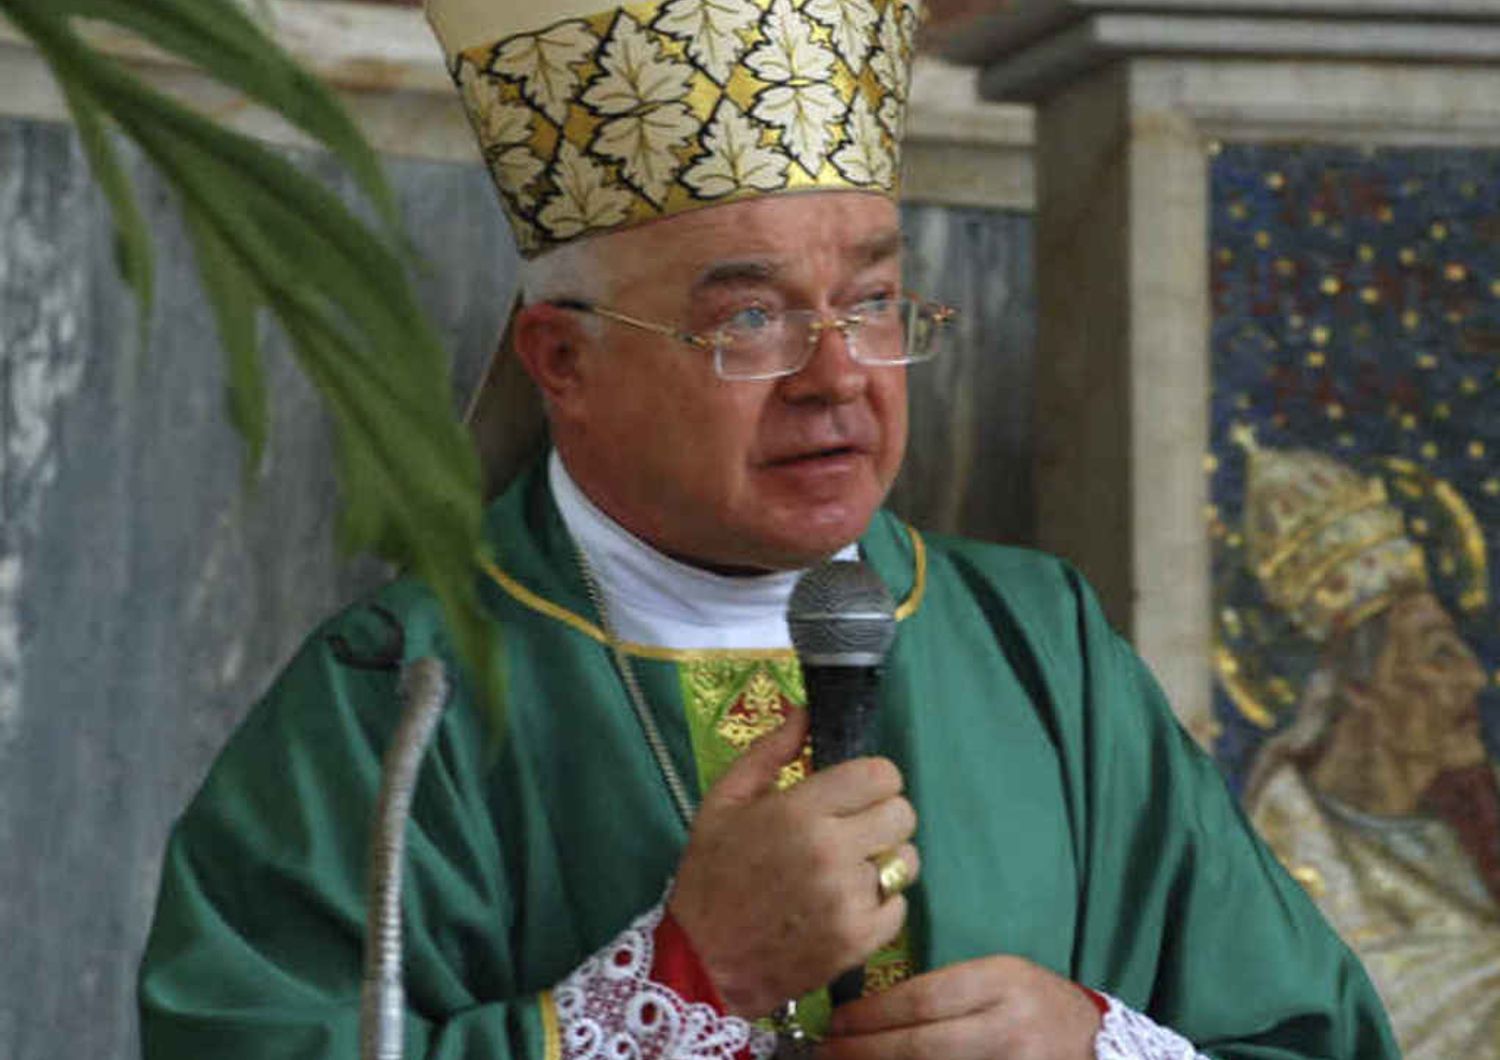 L'Arcivescovo pedofilo rischia 7 anni di carcere